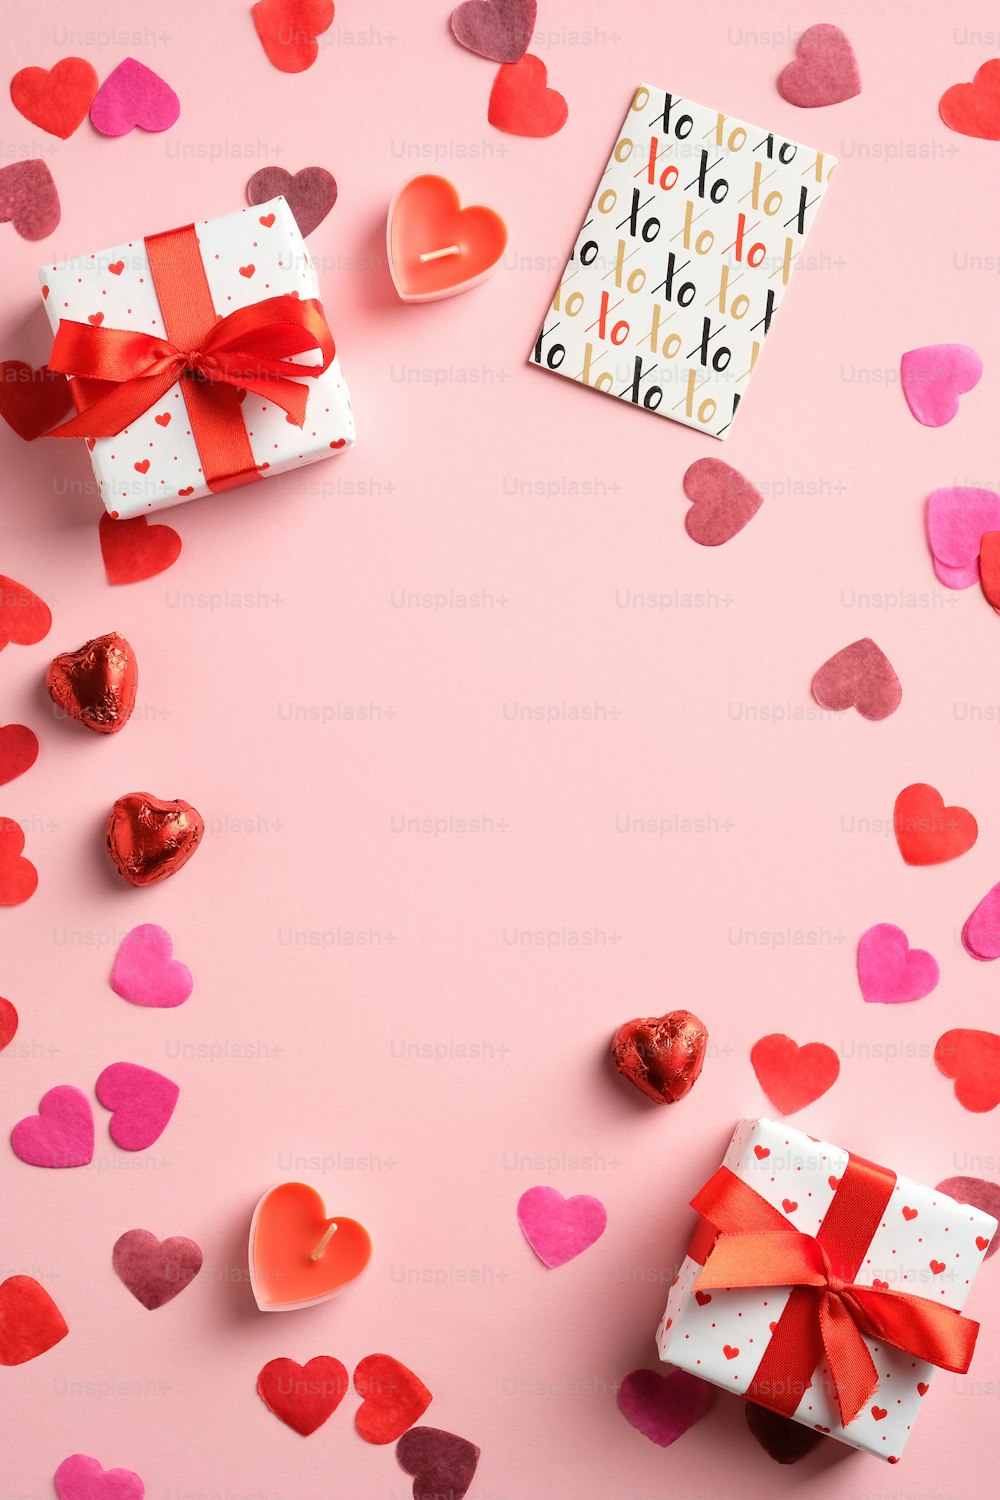 발렌타인 데이 플랫 레이 구성. 하트, 선물 상자, 분홍색 배경에 종이 카드의 상위 뷰 프레임. 전단지, 브로셔, 소셜 미디어 이야기에 적합